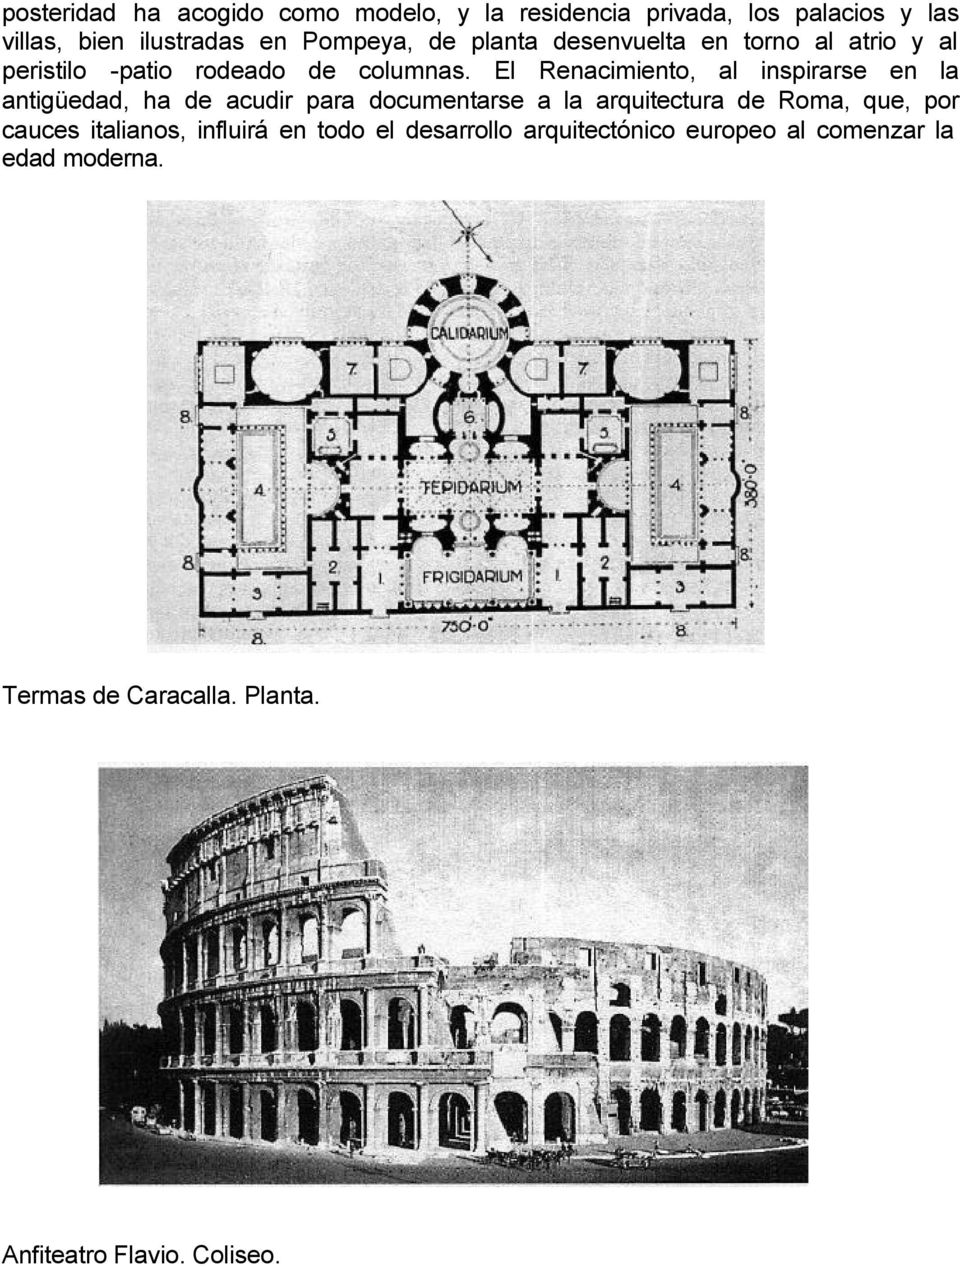 El Renacimiento, al inspirarse en la antigüedad, ha de acudir para documentarse a la arquitectura de Roma, que, por